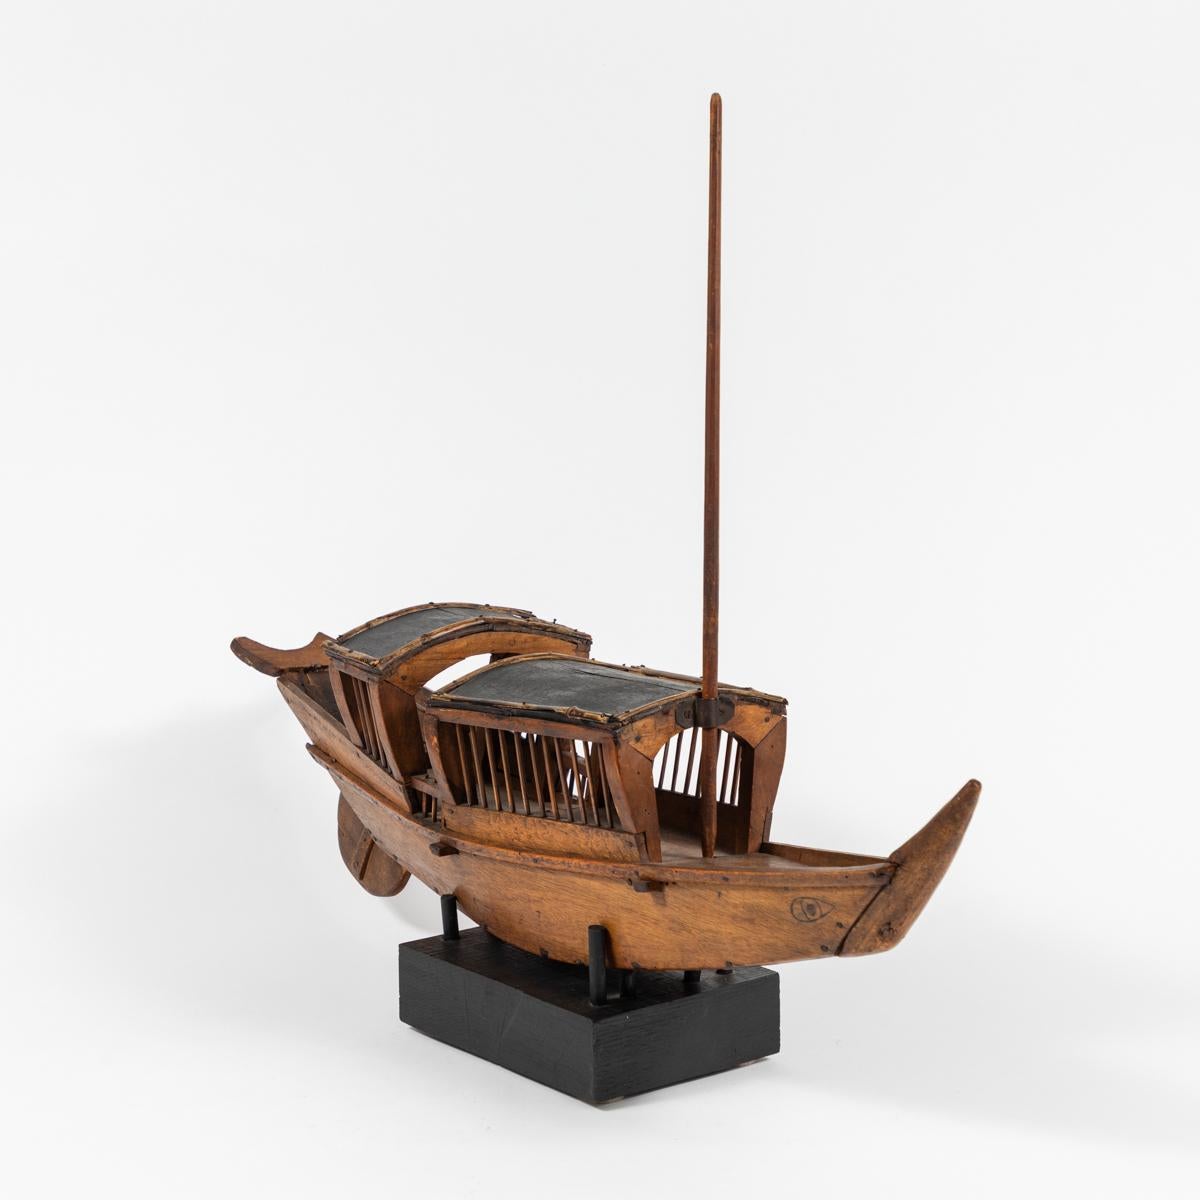 Rustic Belgian Wooden Boat 3